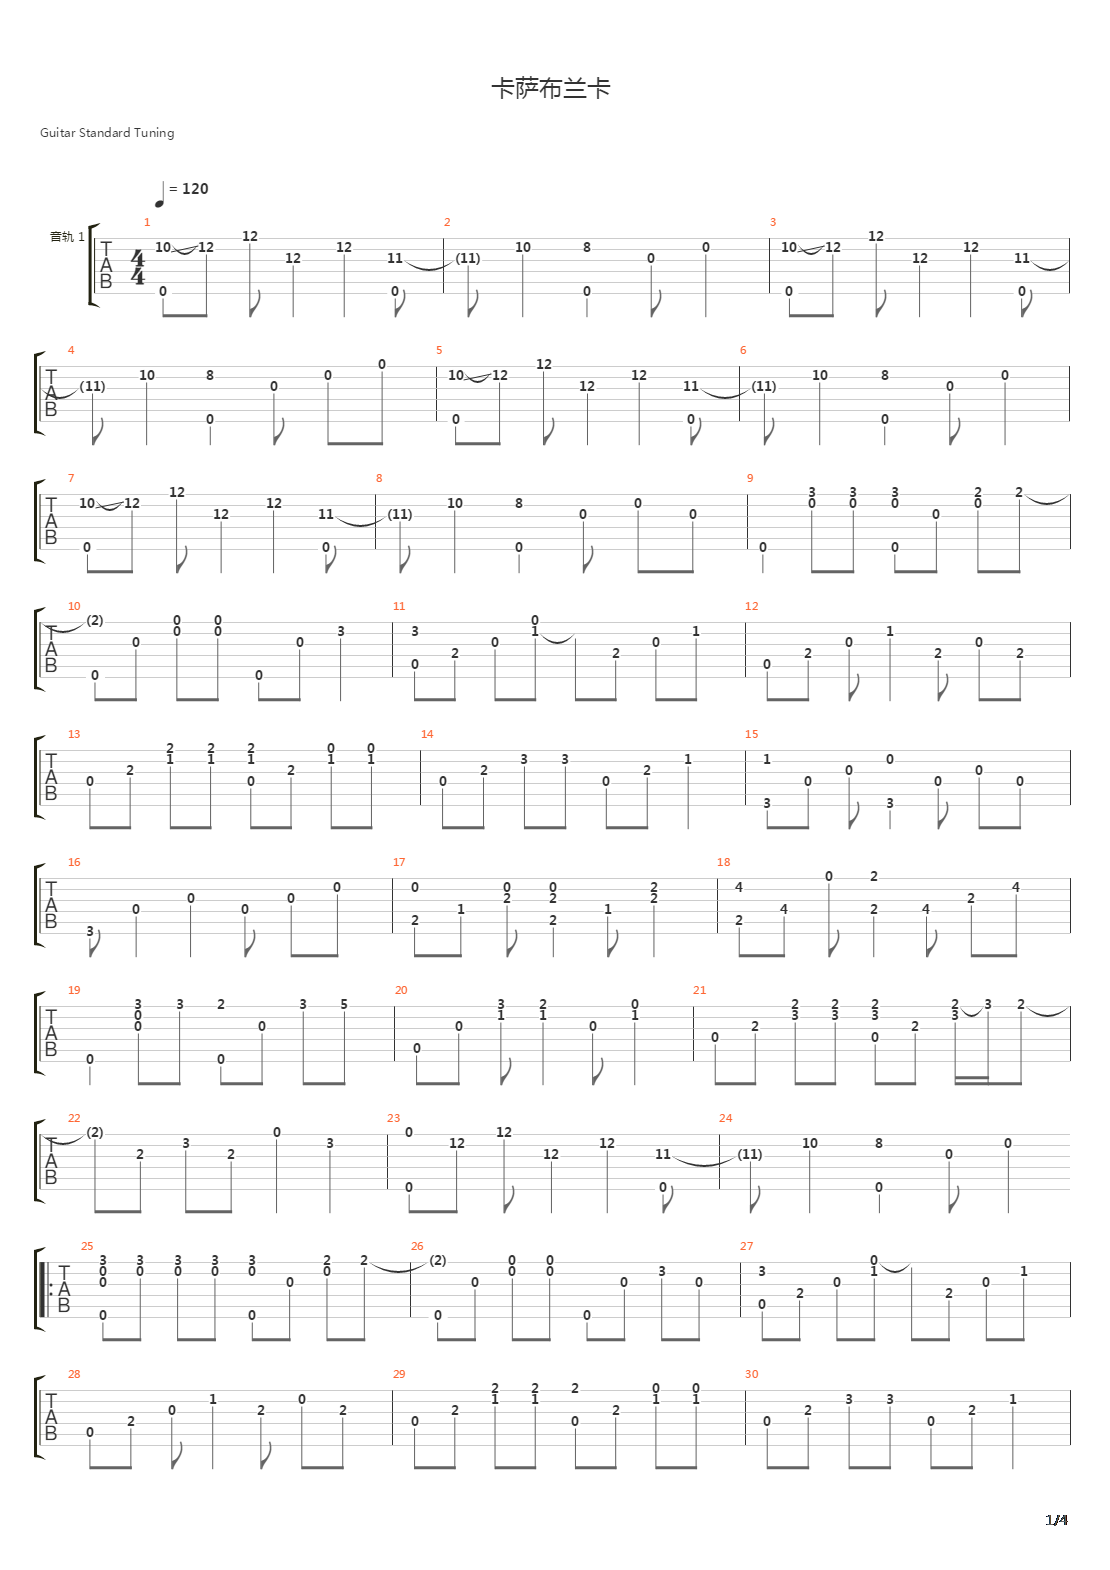 《卡萨布兰卡》独奏谱图谱 - 吉他谱 选用G调指法编配 - 初级谱子 - 六线谱(独奏/指弹谱) - 易谱库